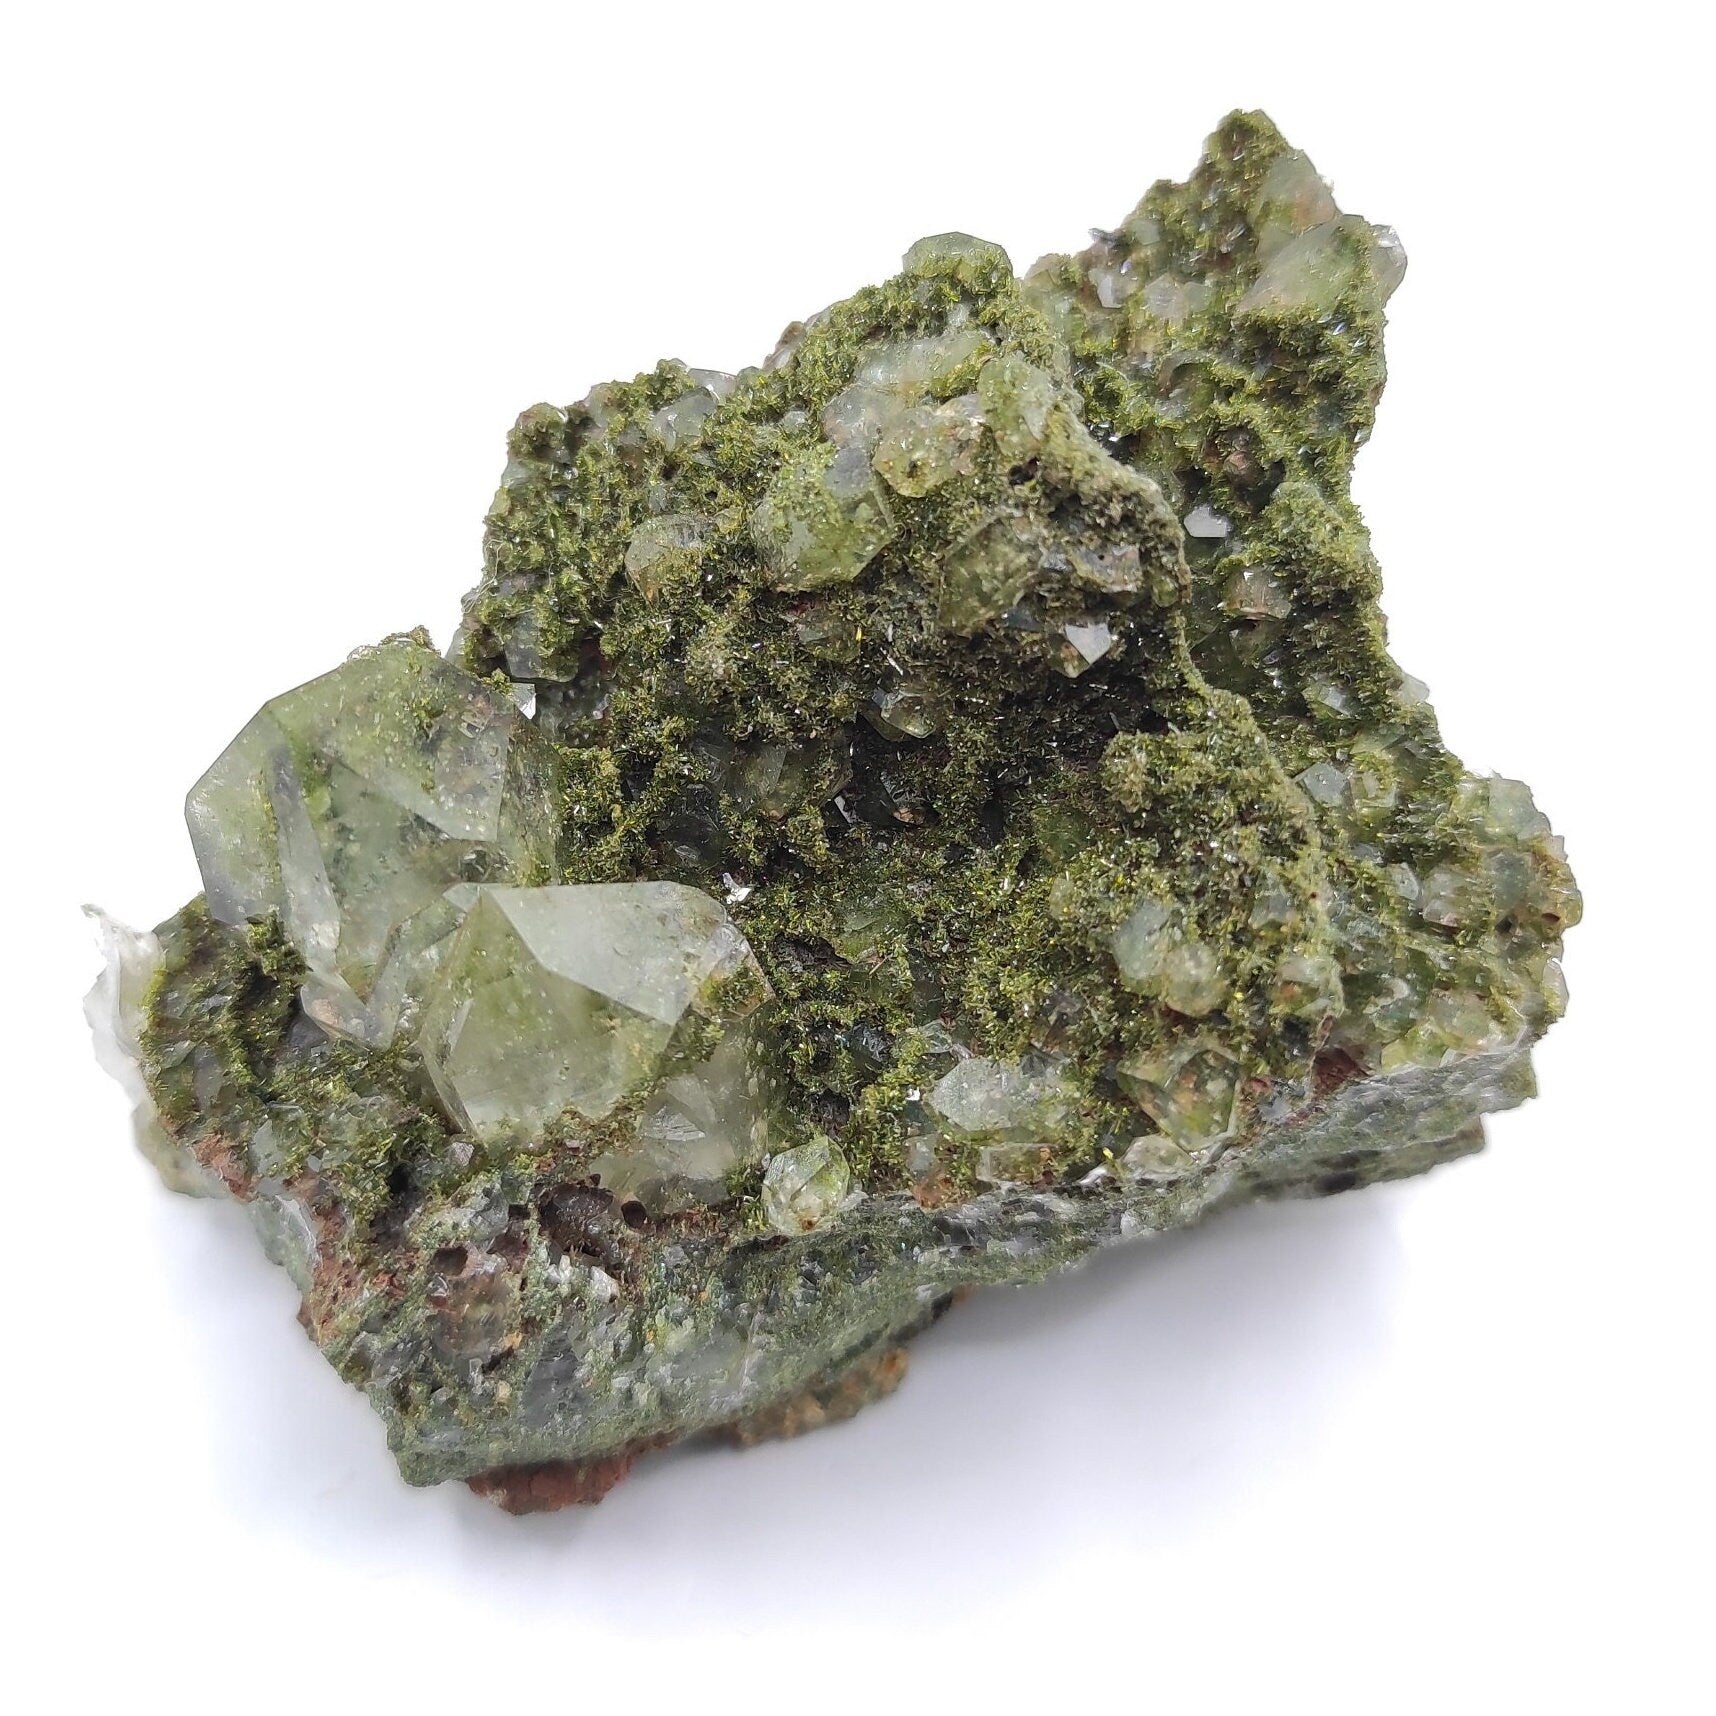 166g Sparkly Epidote & Forest Quartz - Hakkari, Turkey - Epidote with Clear Quartz - Forest Fairy Quartz - Natural Minerals - Rare Find